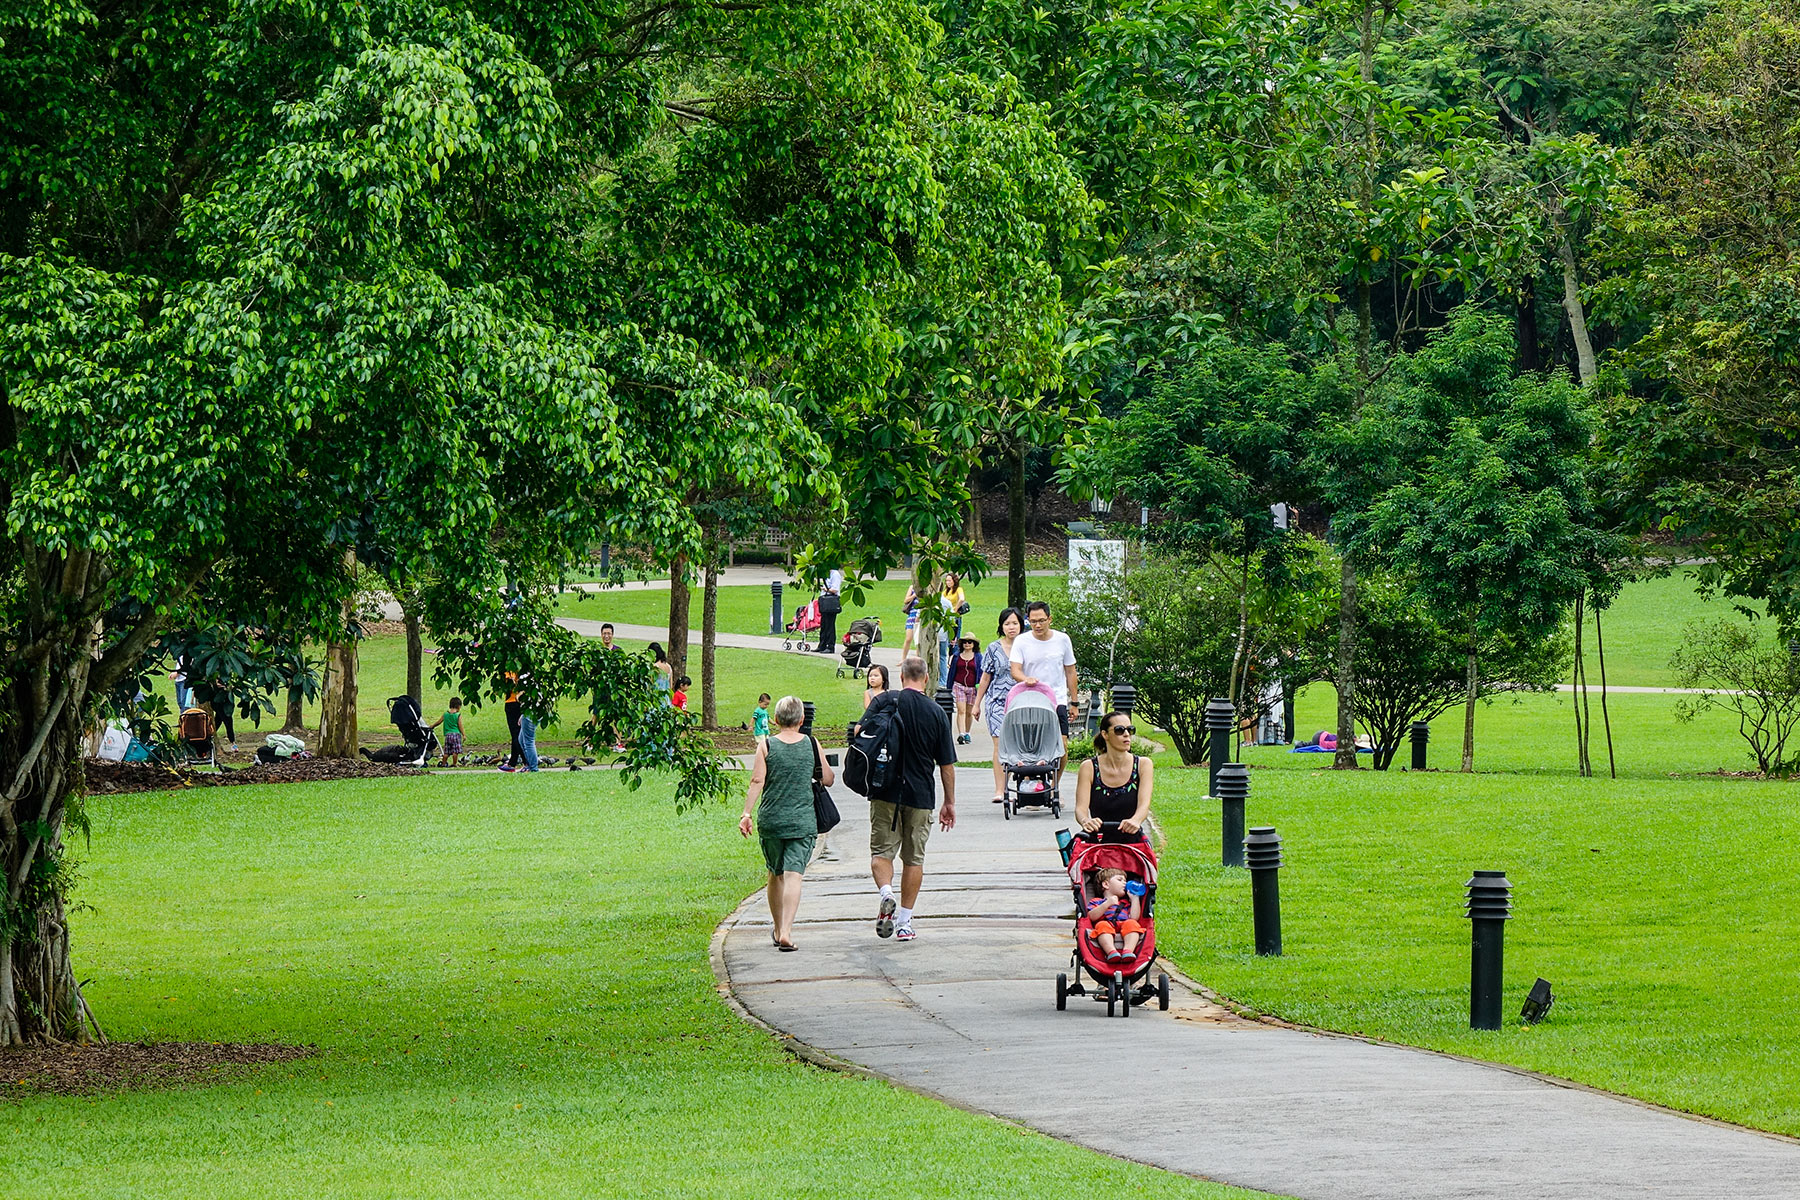 People strolling in Singapore's Botanic Gardens